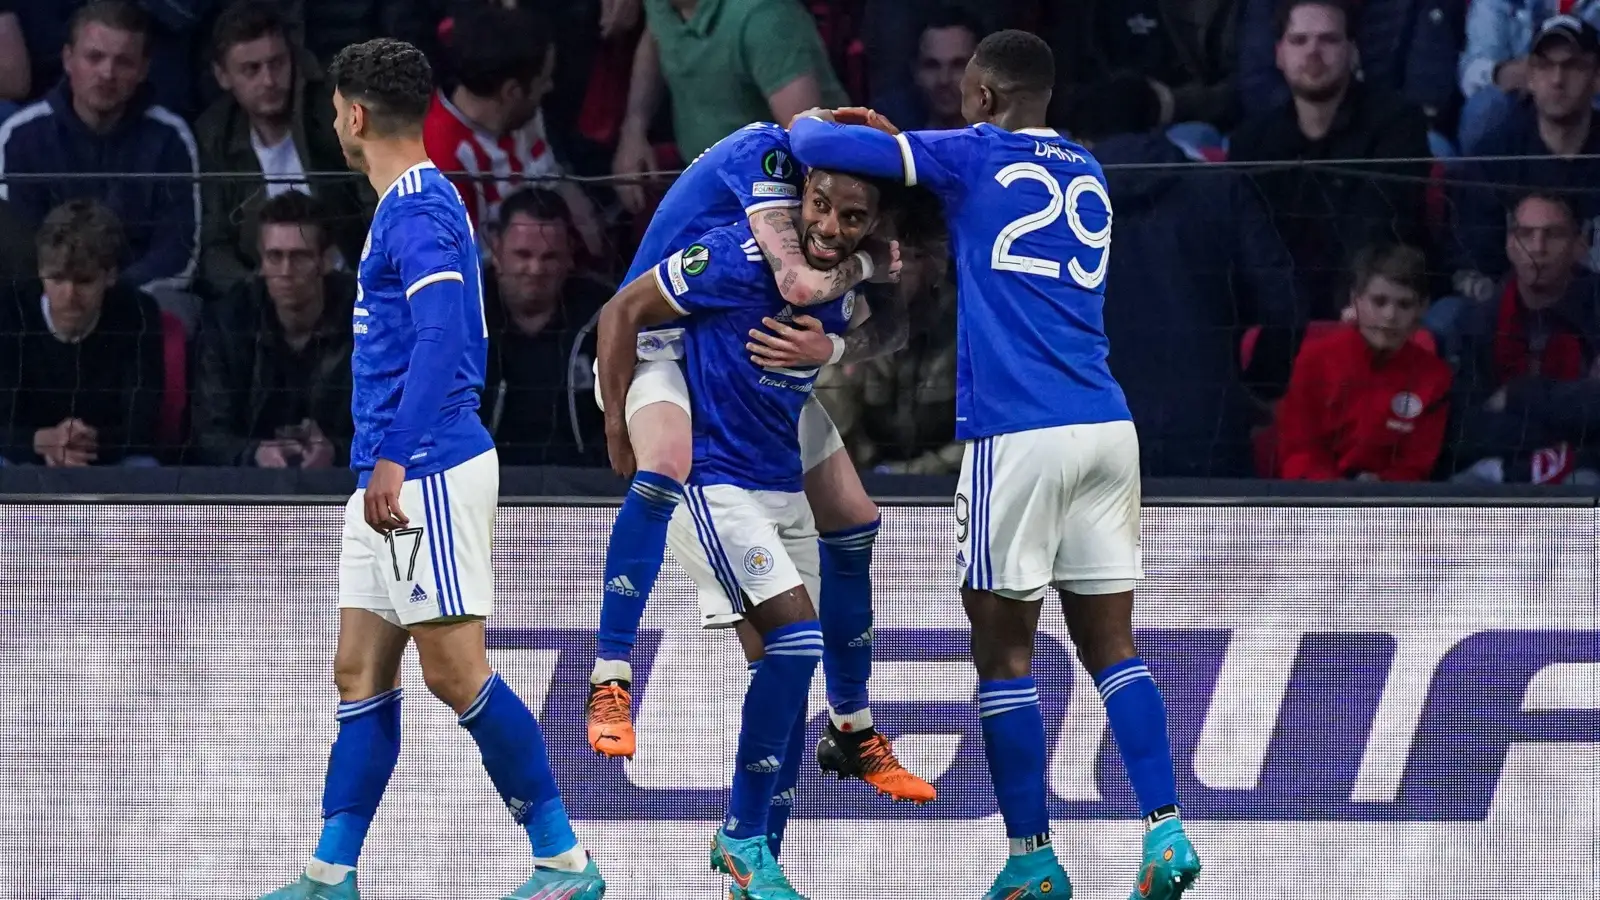 PSV vs Leicester - Ricardo Pereira celebrates his goal